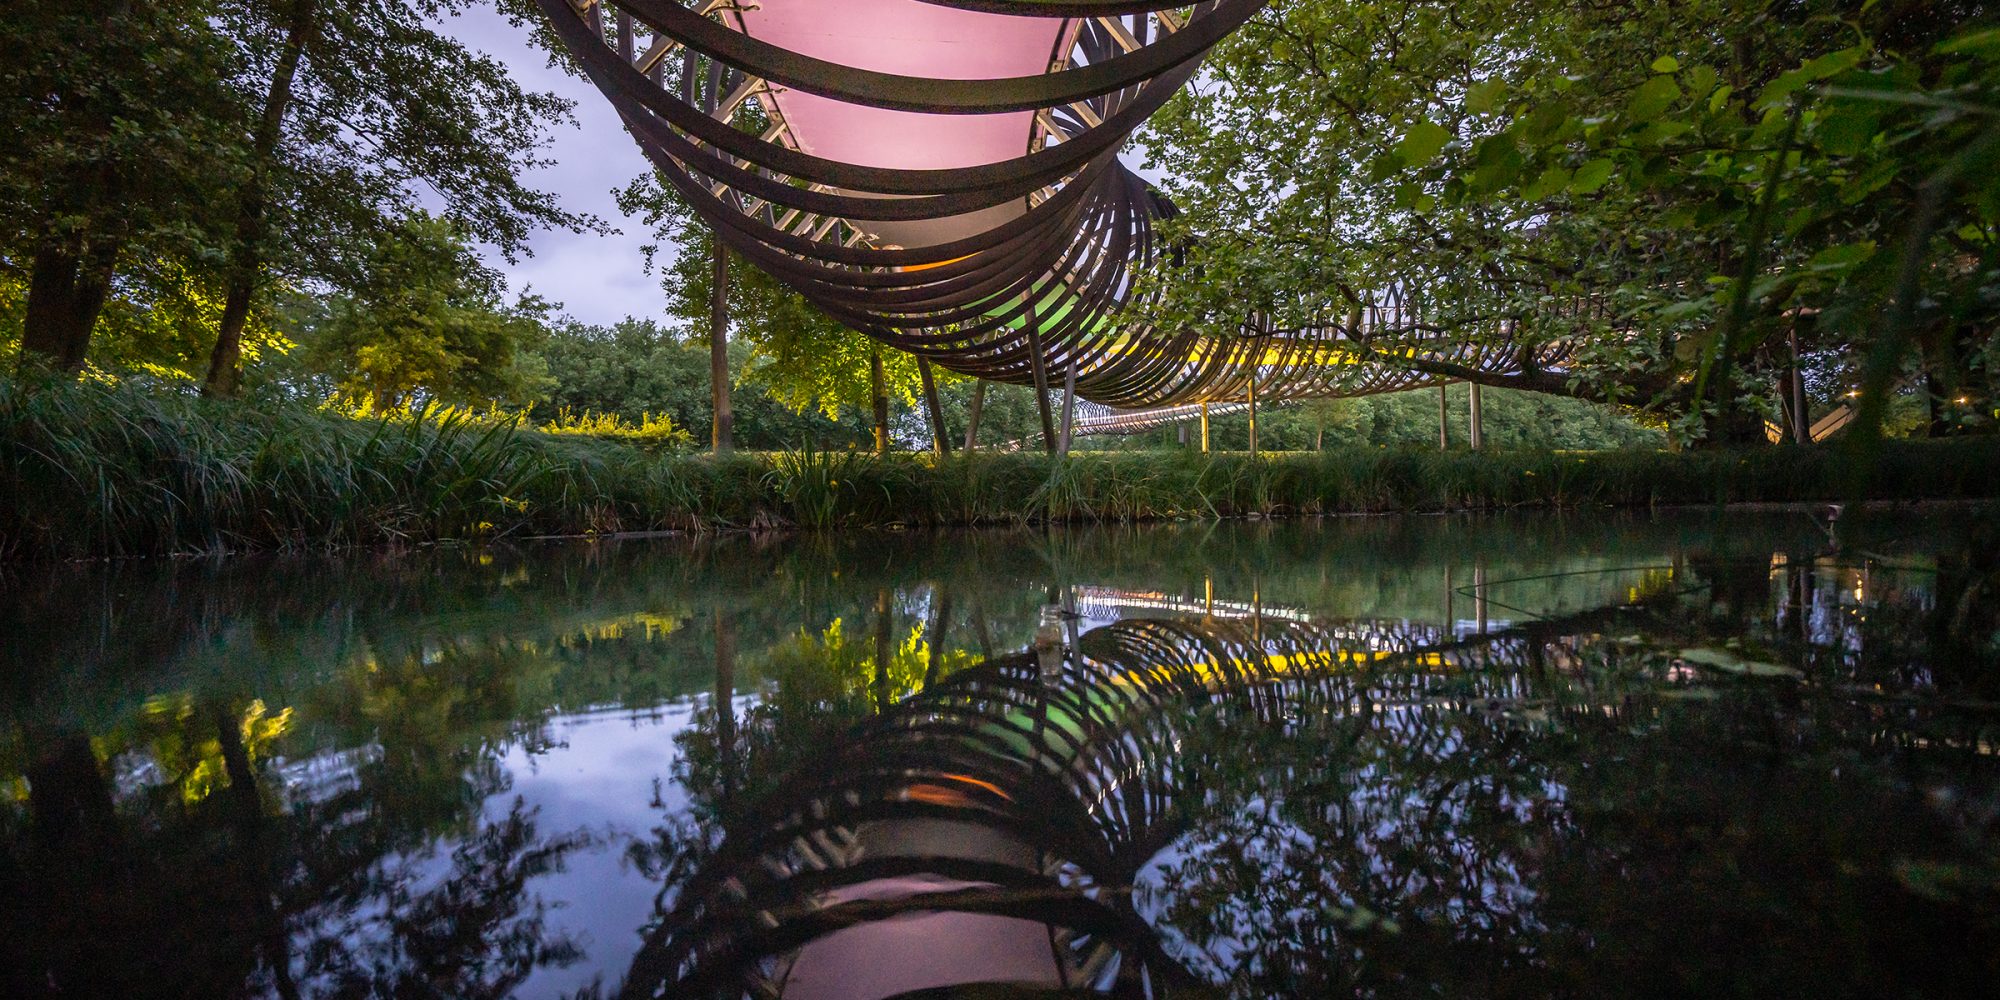 Das Foto zeigt die Brücke Slinky Springs to Fame im Kaisergarten Oberhausen